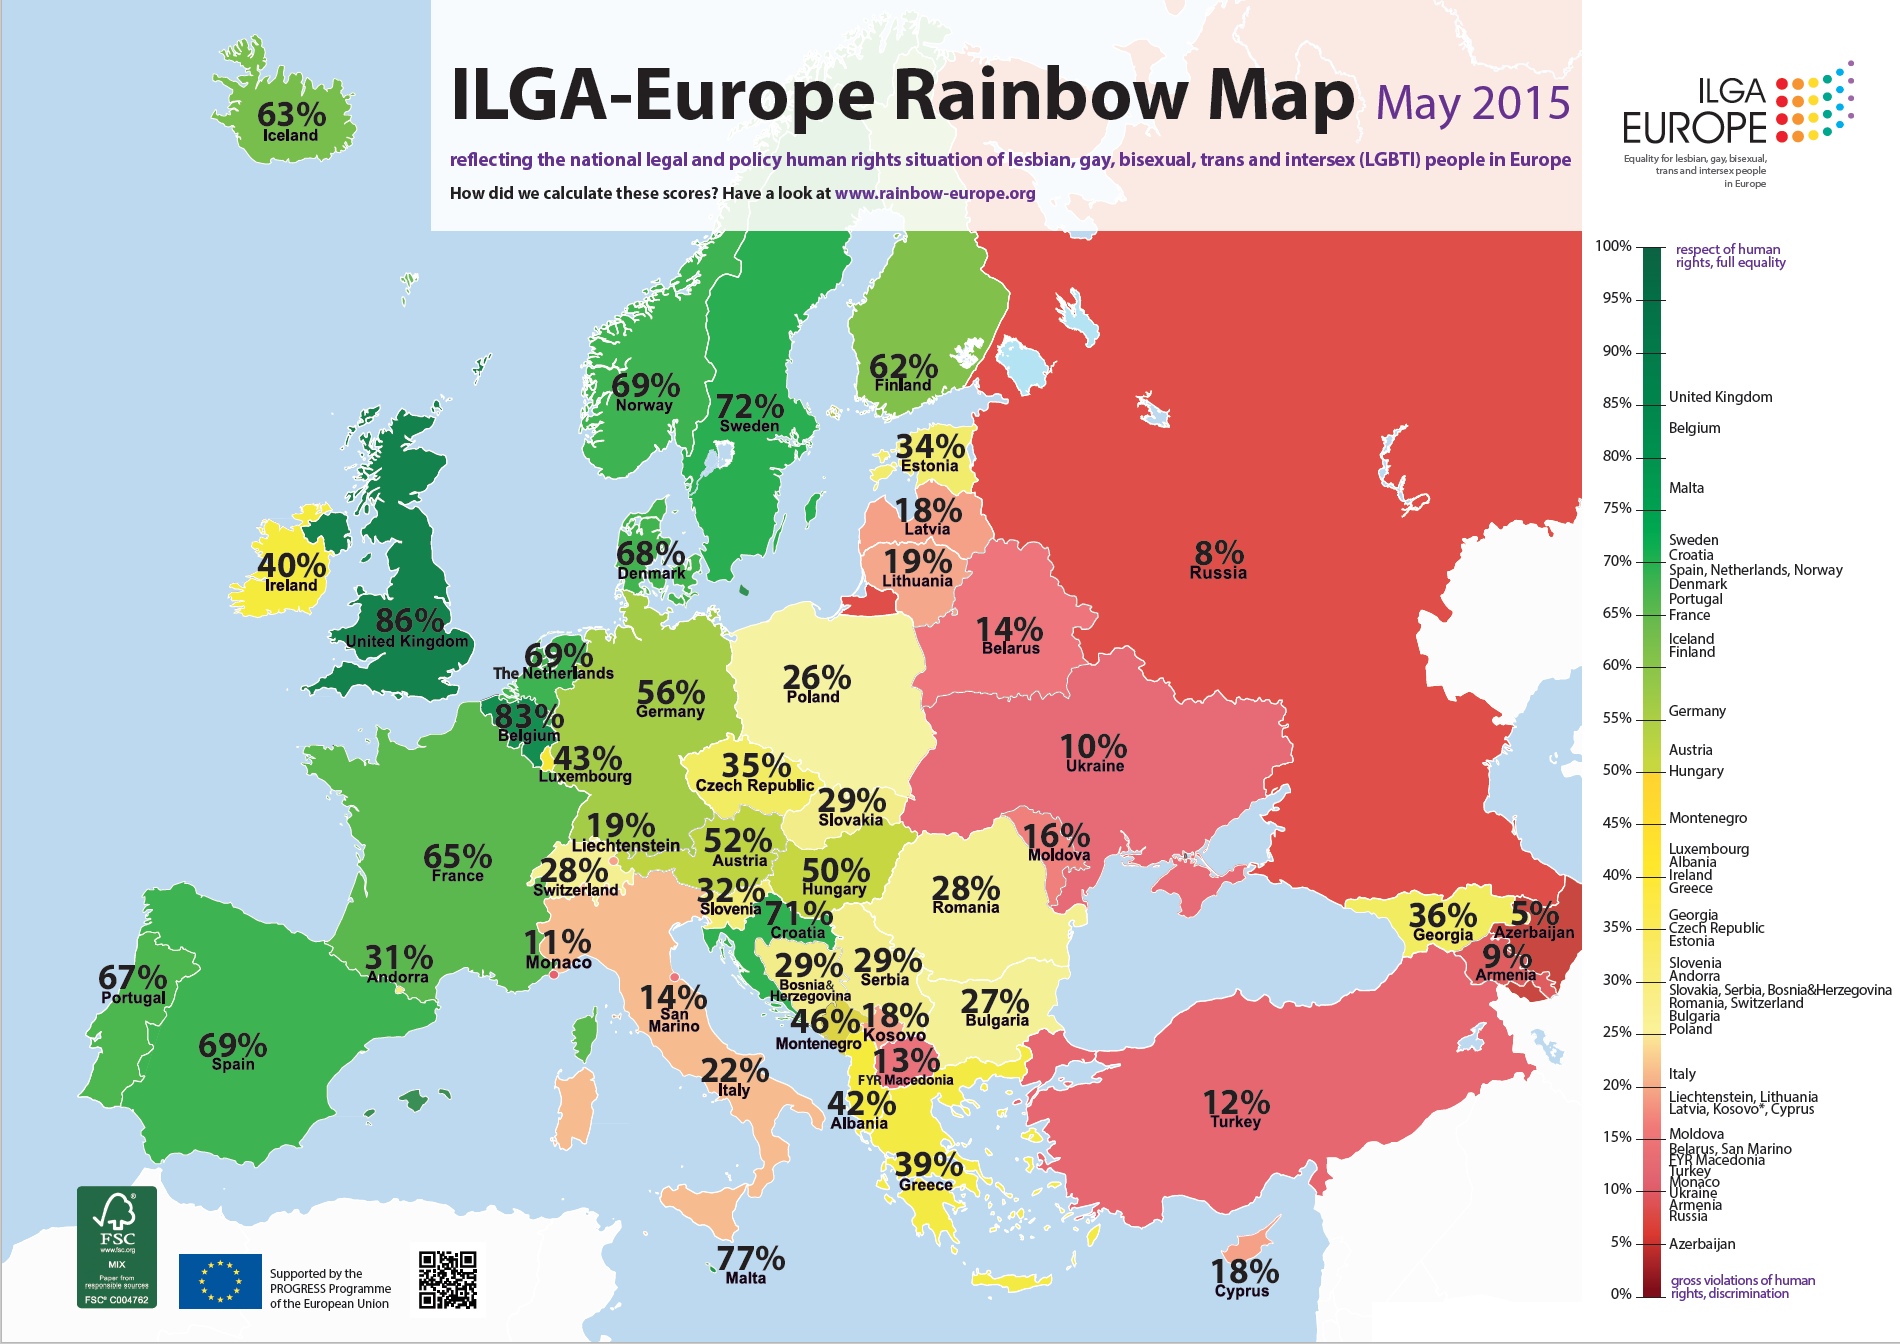 Die rechtliche Gleichstellung Homosexueller ist nicht überall in Europa gleich.